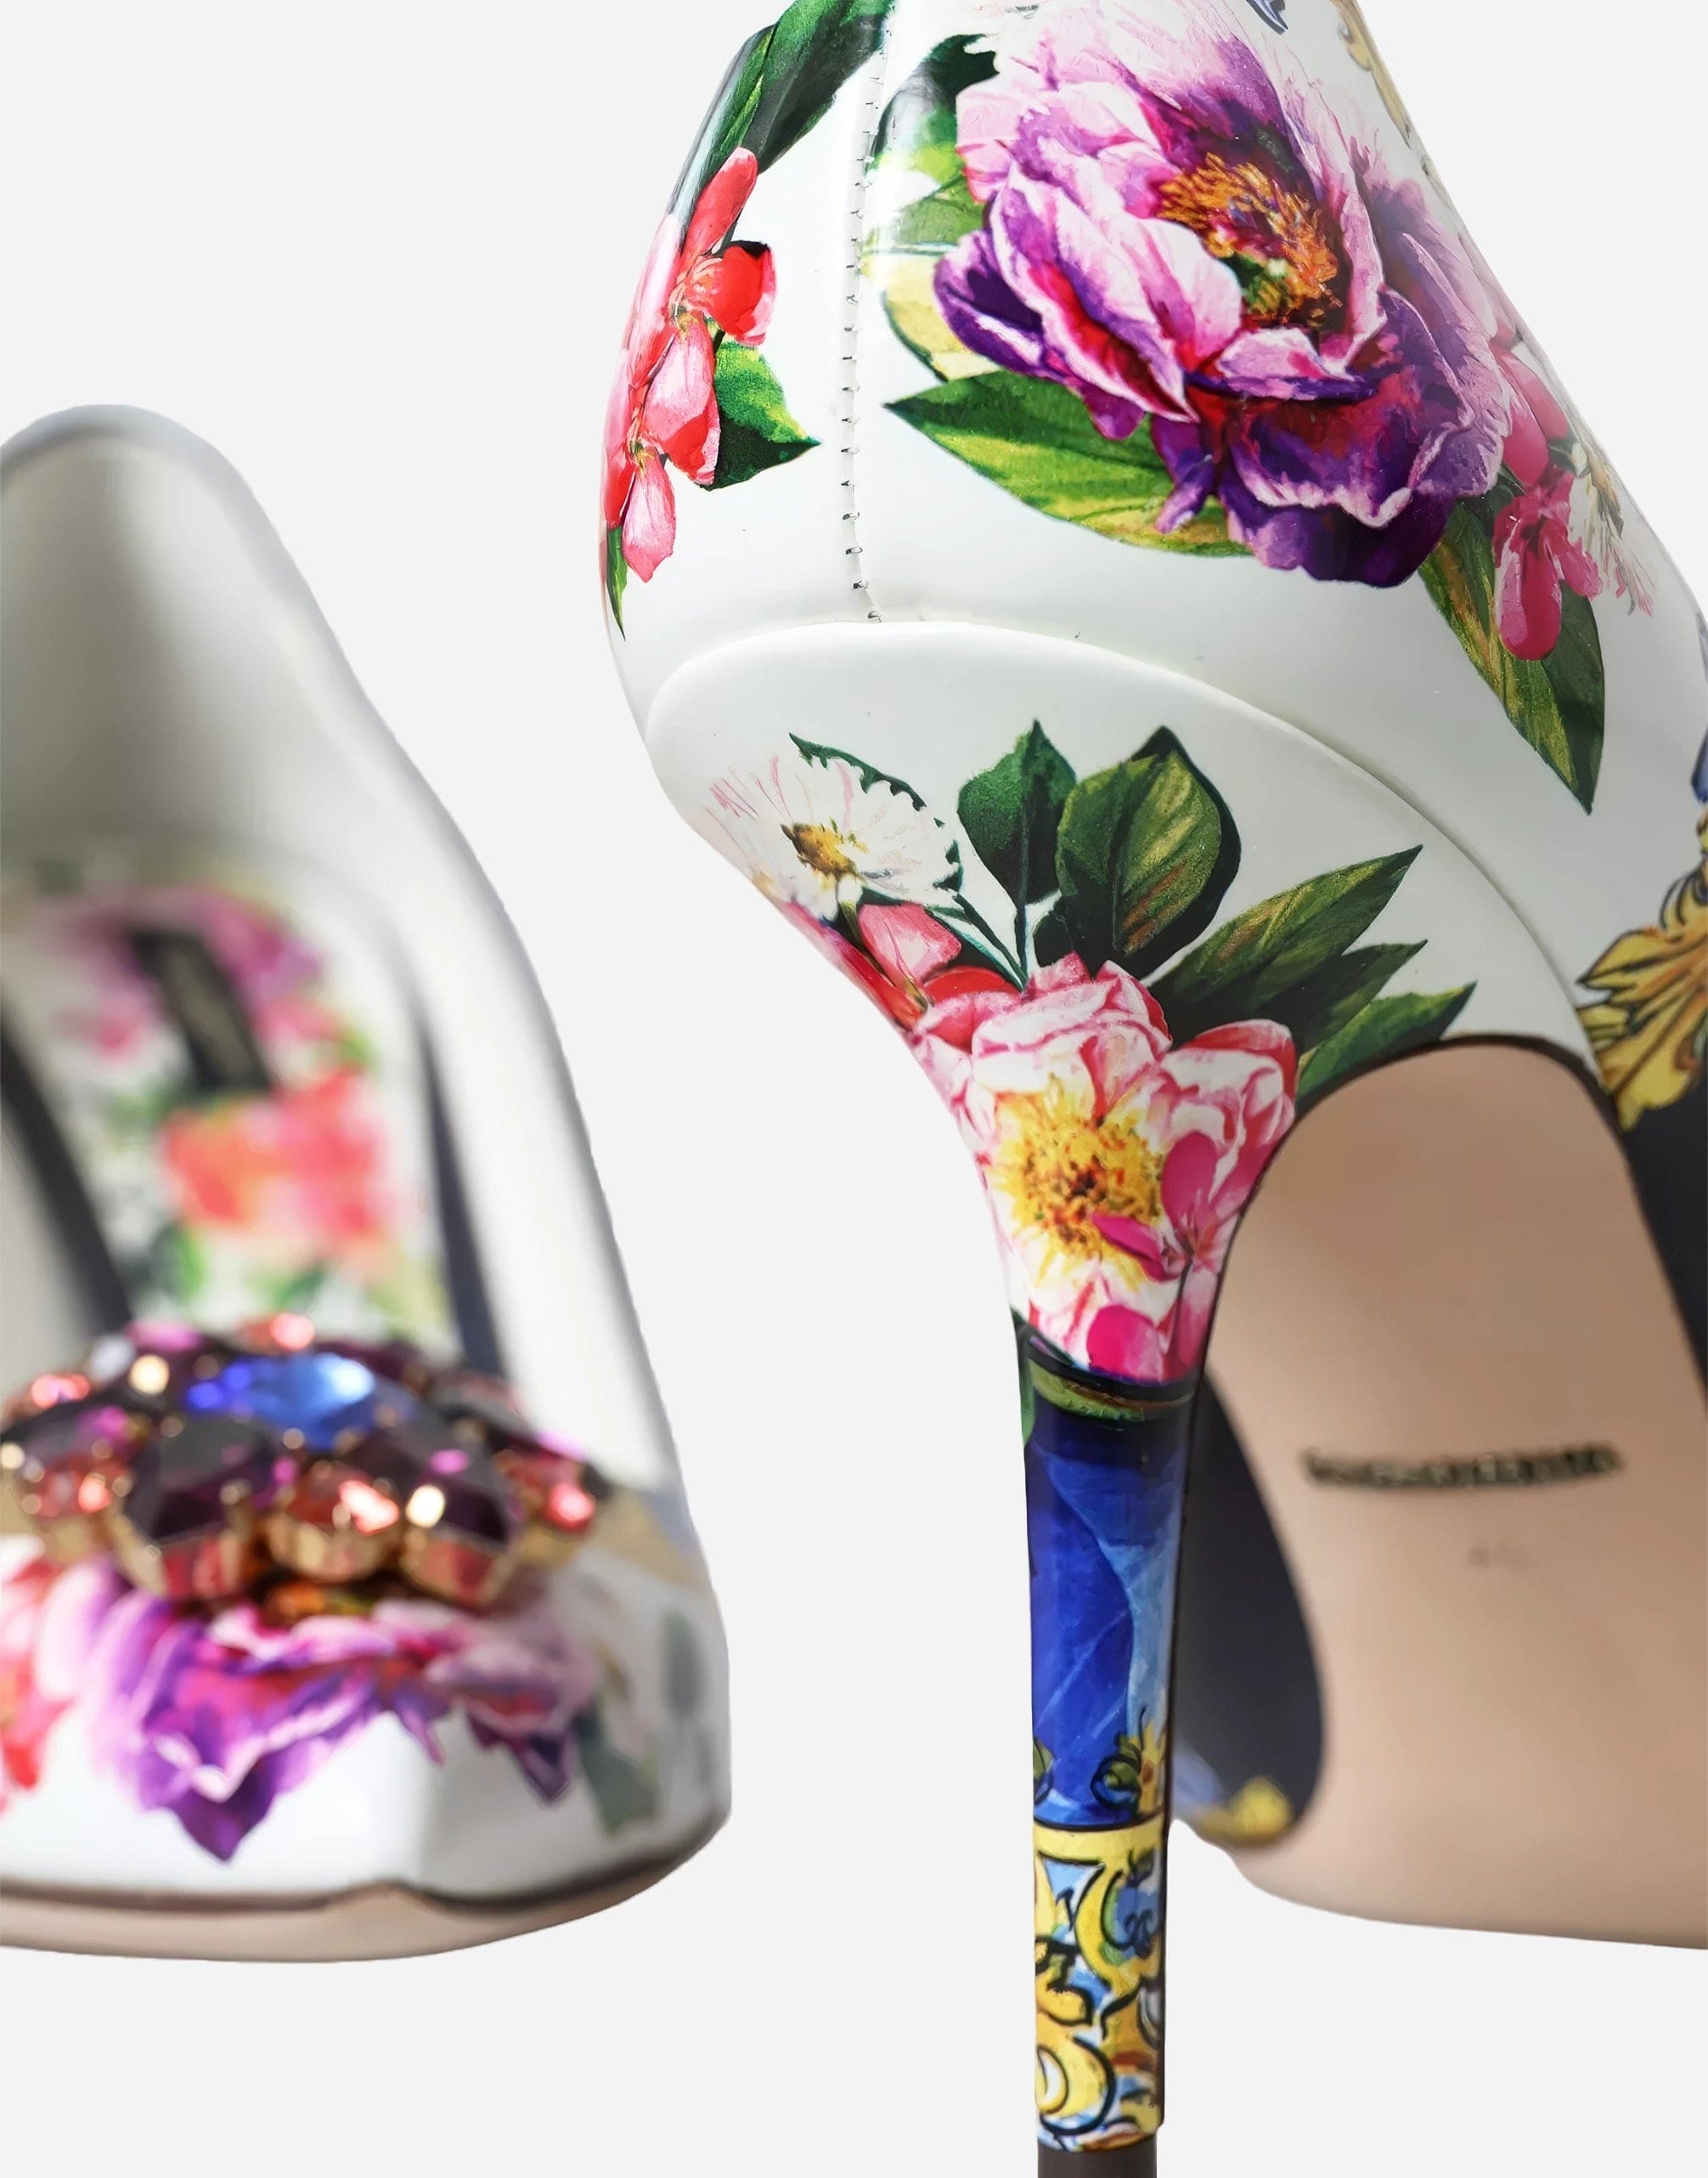 Dolce & Gabbana Multicolor Floral Print Pumps